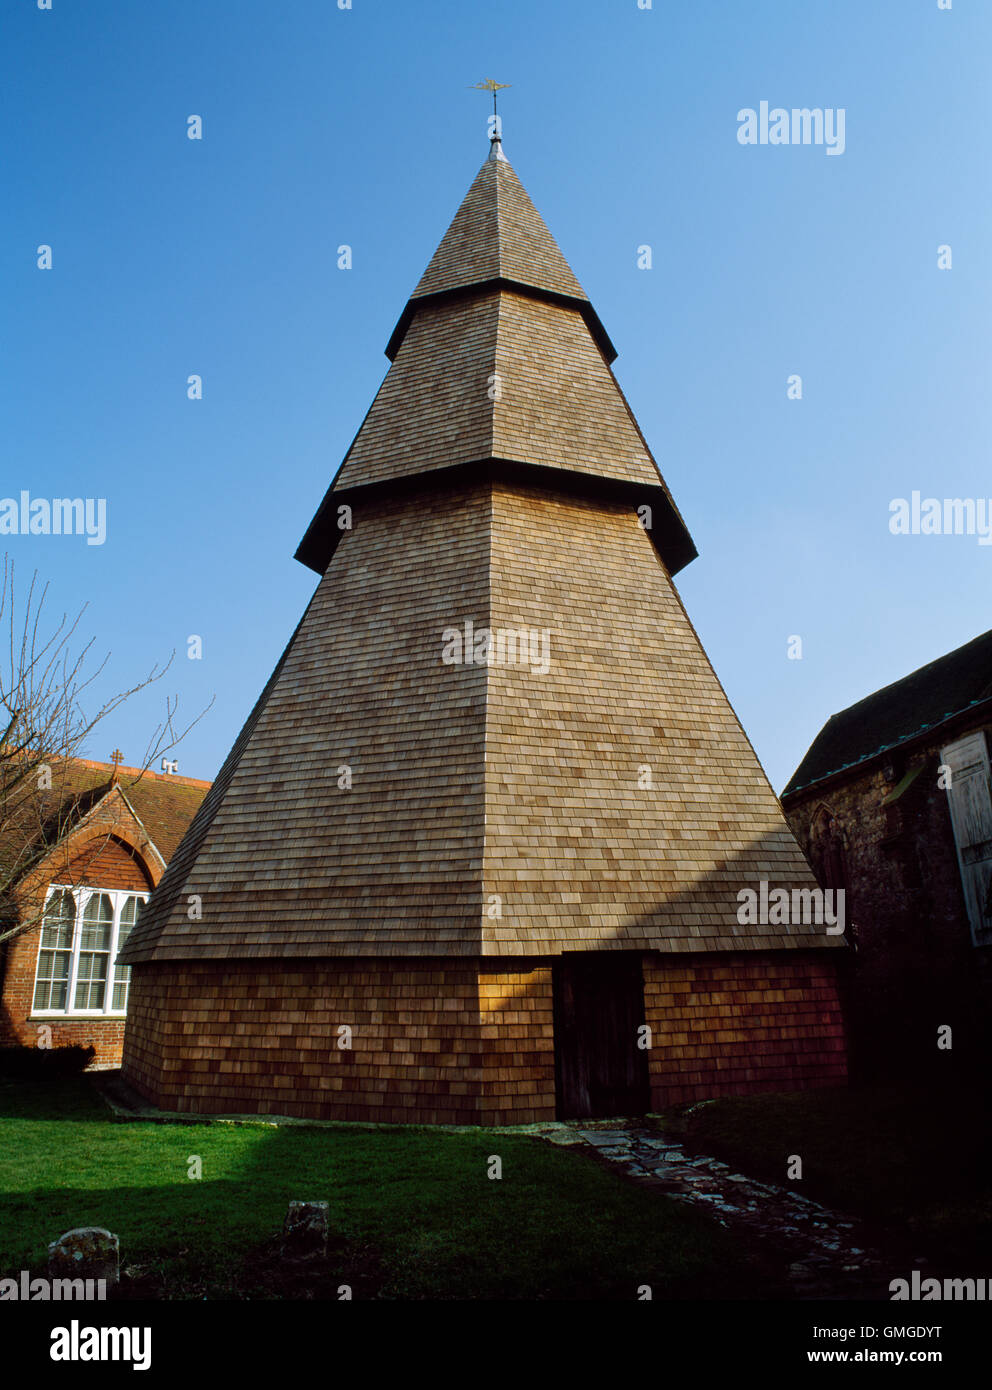 Beffroi en bois détaché de l'église de Brookland, Kent, composé de 3 pyramides octogonales à plusieurs niveaux : cadre date de c. 1260, les bardeaux à partir de 1991. Banque D'Images